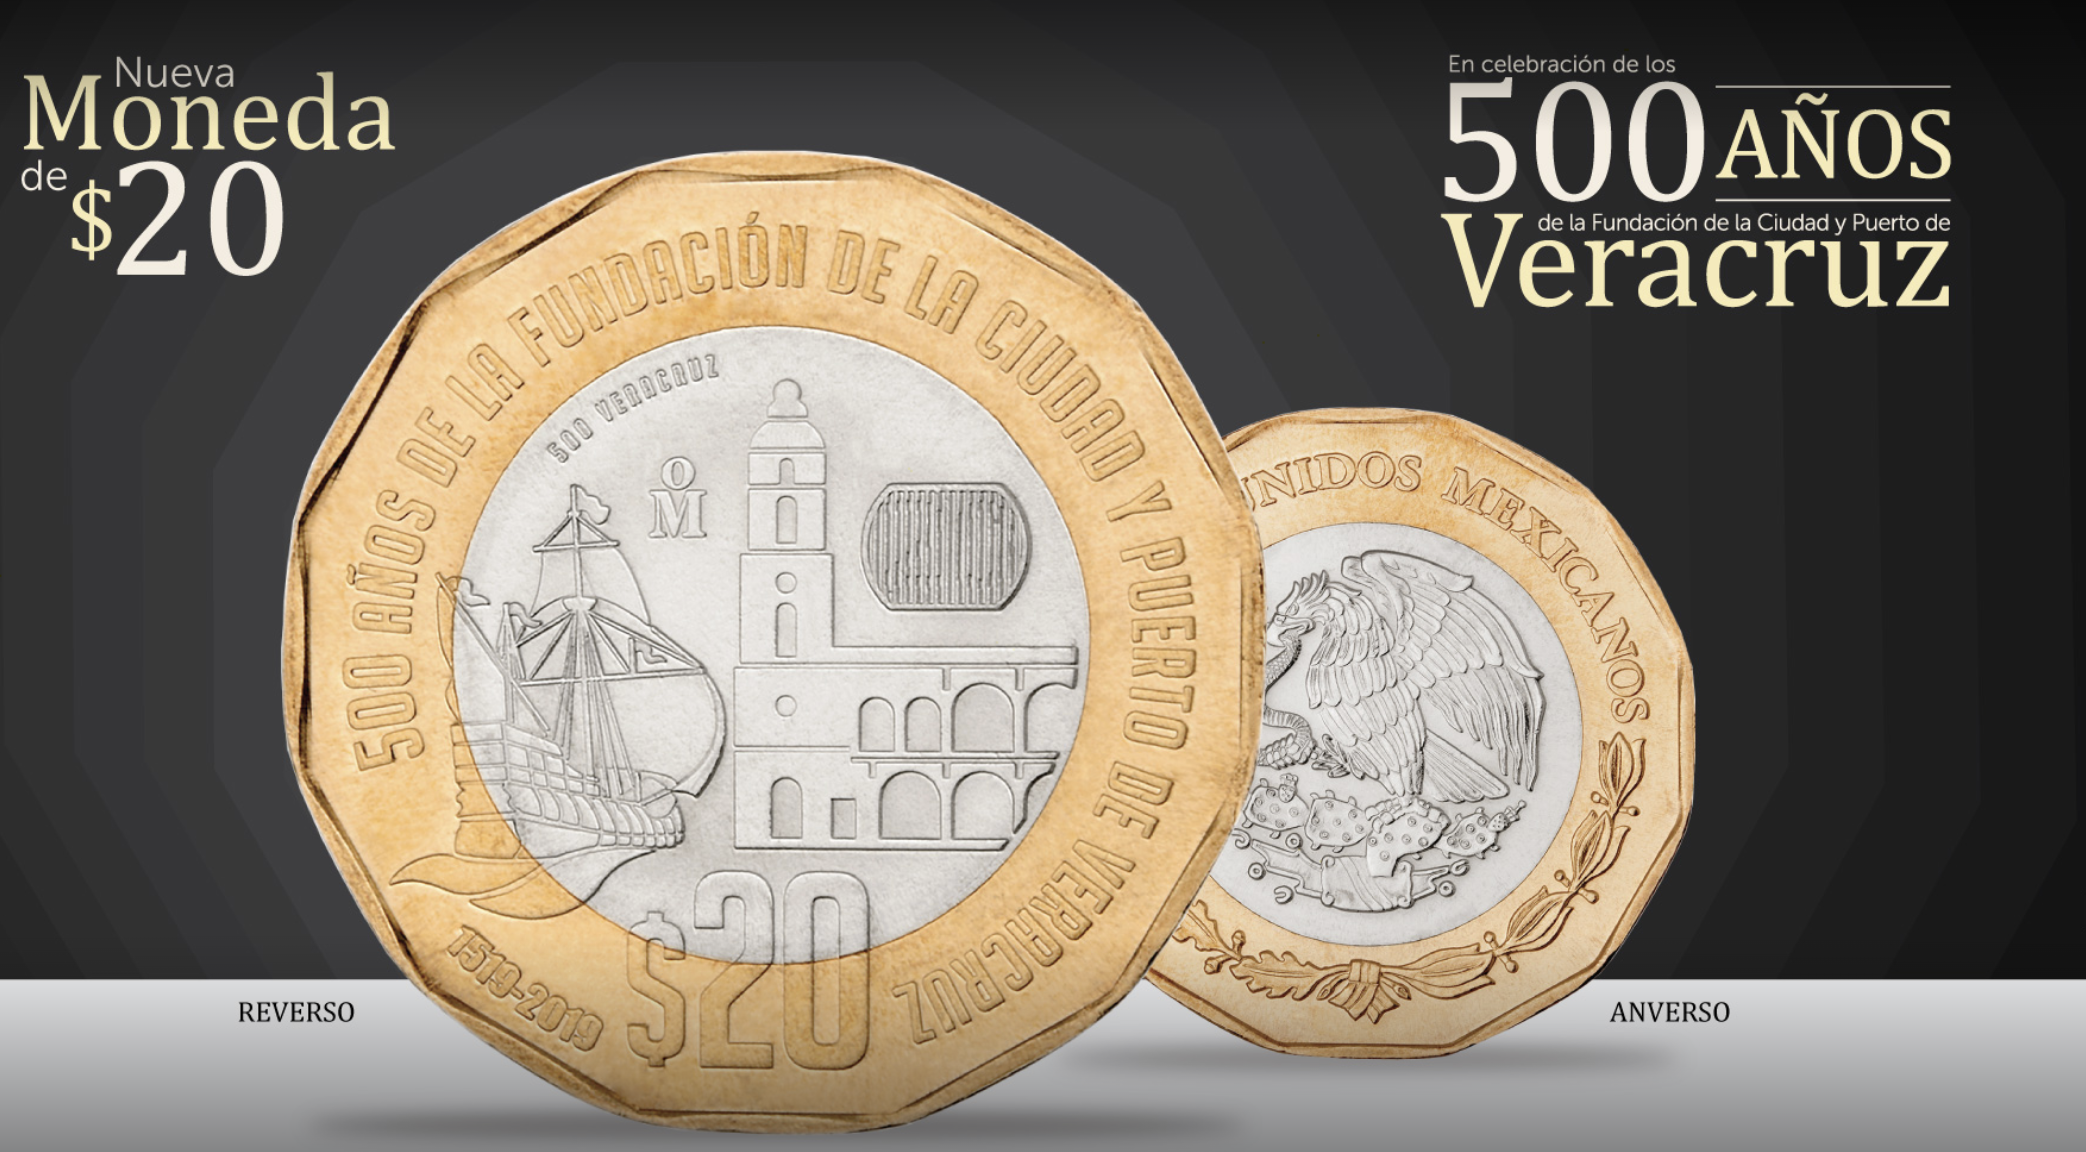 Nueva moneda de 20 Pesos conmemorativa de los 500 años de la fundación